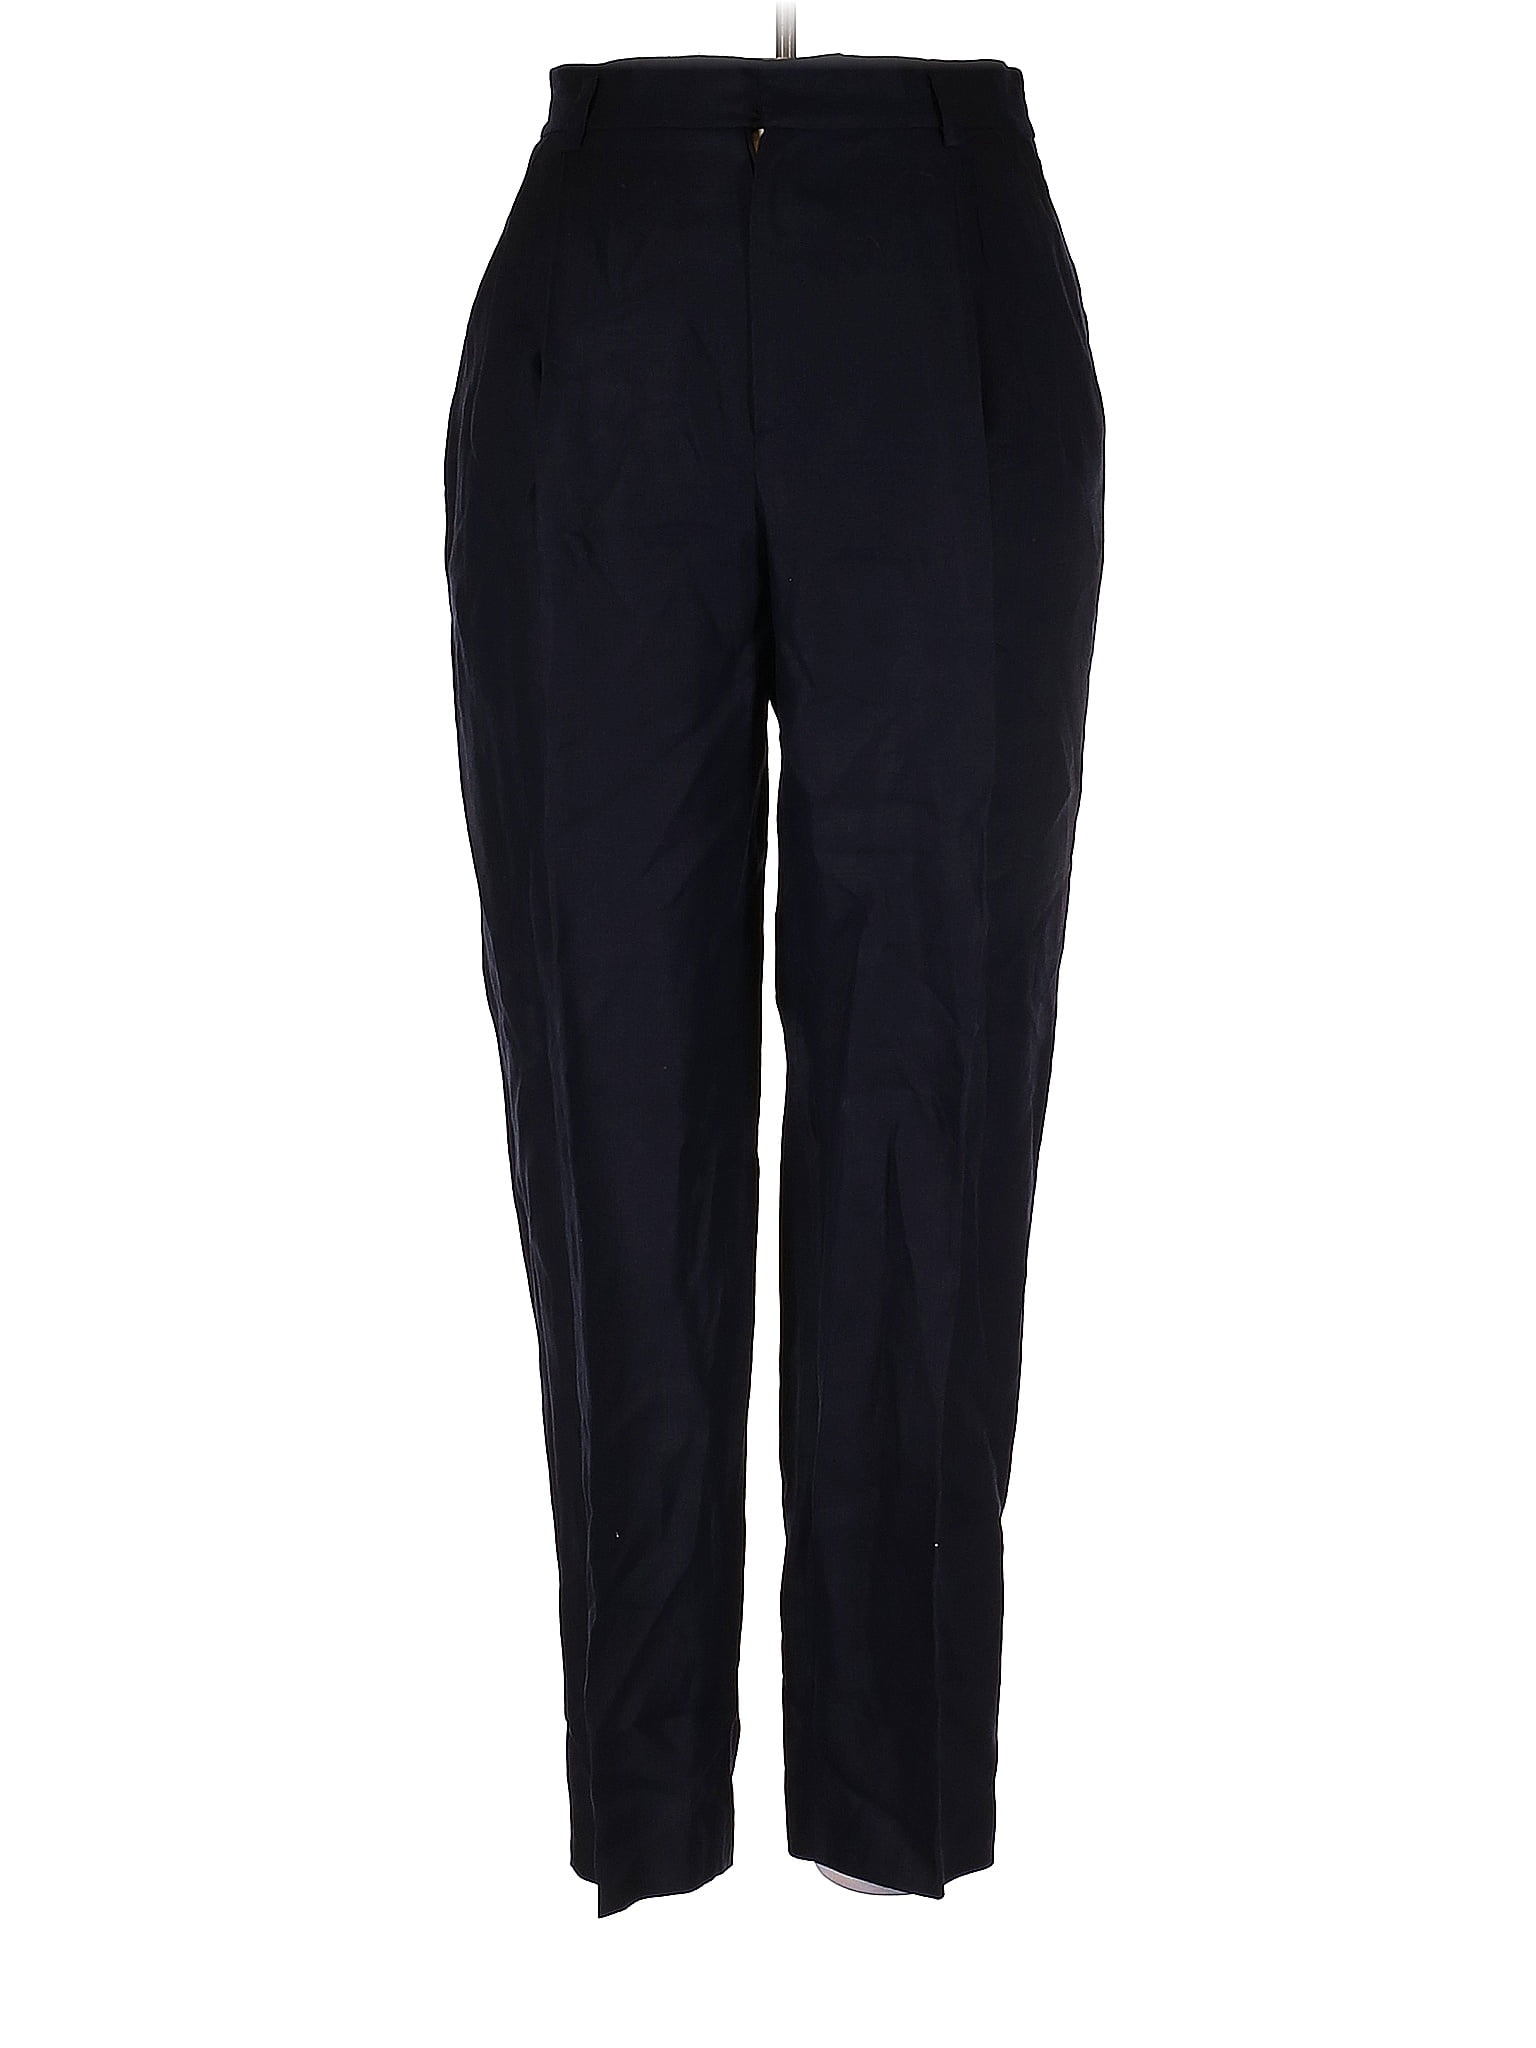 Ellen Tracy 100% Linen Solid Black Blue Linen Pants Size 14 - 74% off ...